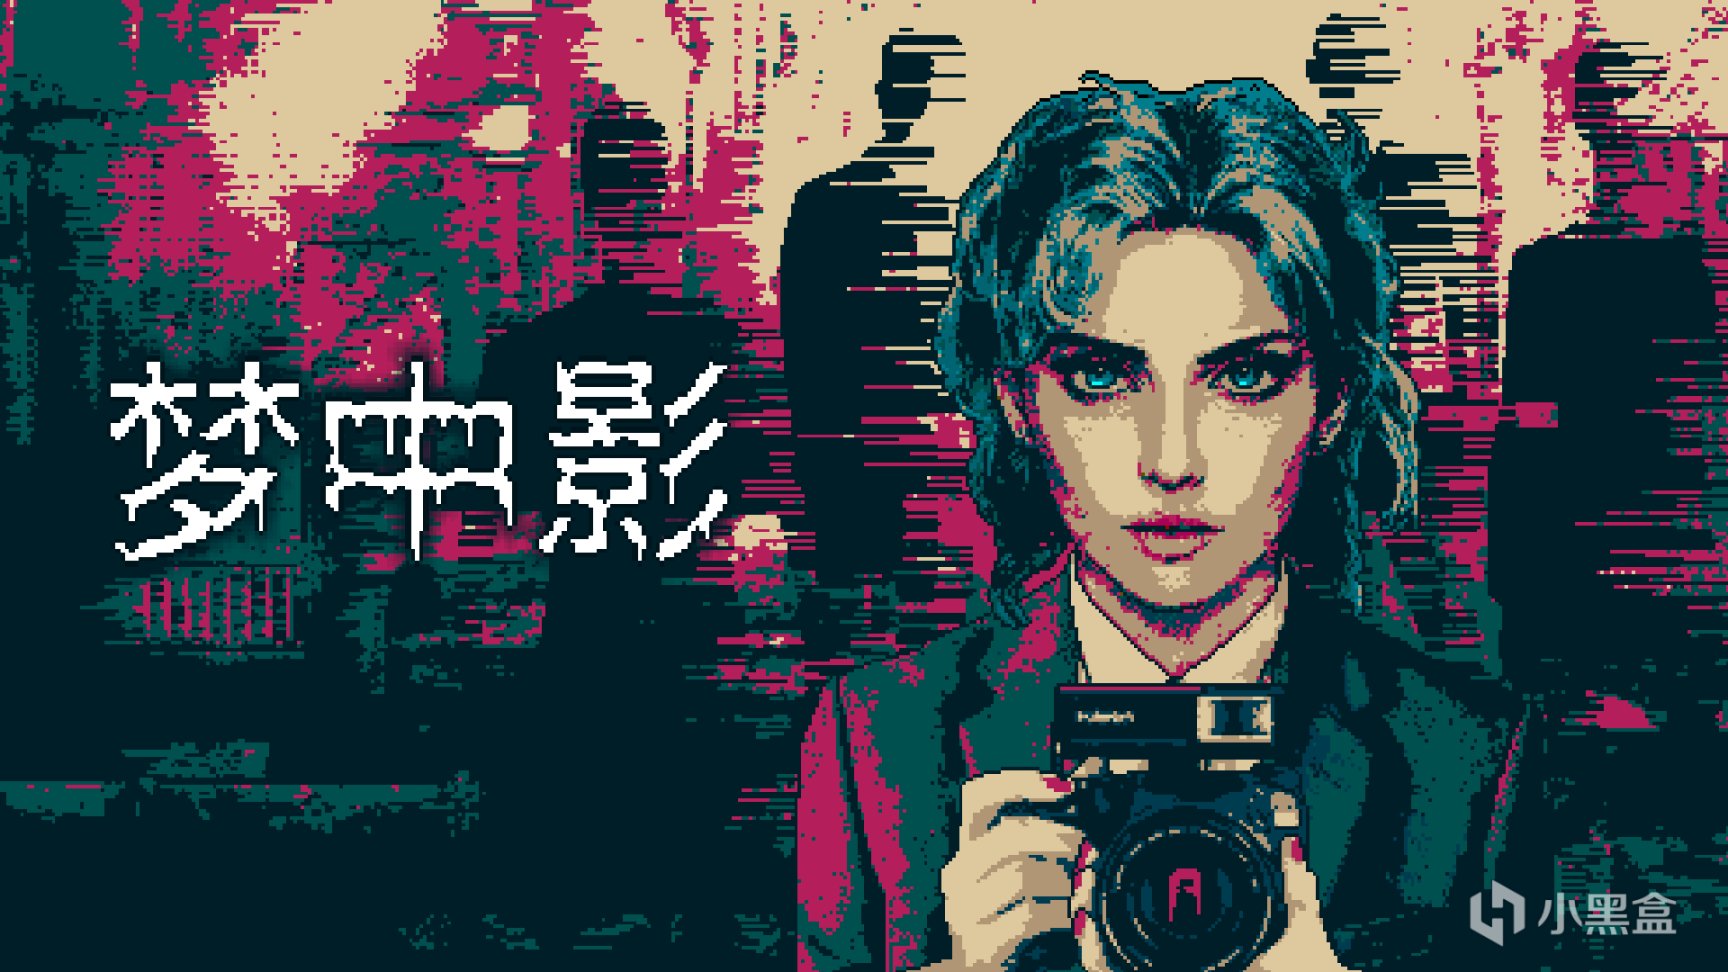 【PC遊戲】遊離現實虛幻之間 心理恐怖遊戲《夢中影》中文試玩版放出